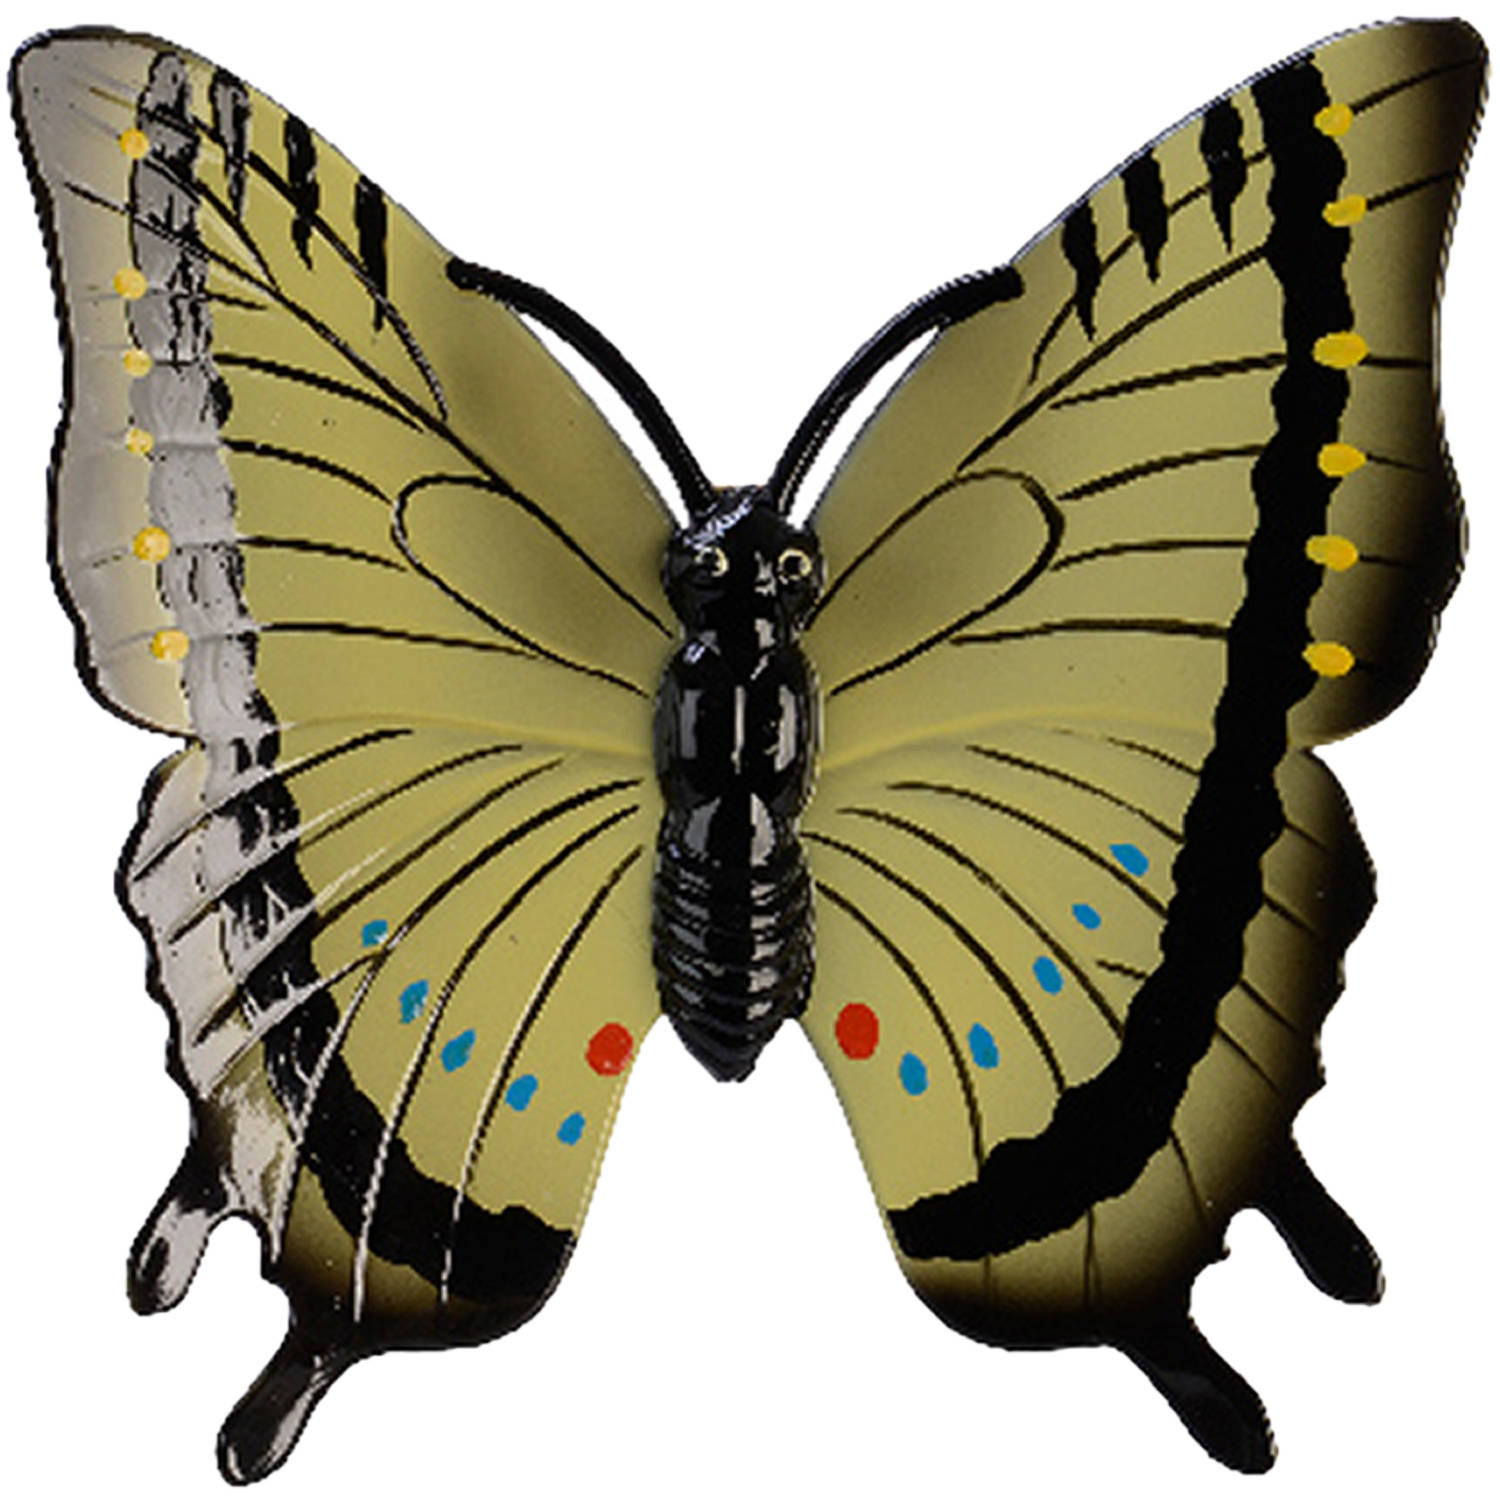 Tuin-schutting decoratie vlinder kunststof geel 24 x 24 cm Tuinbeelden